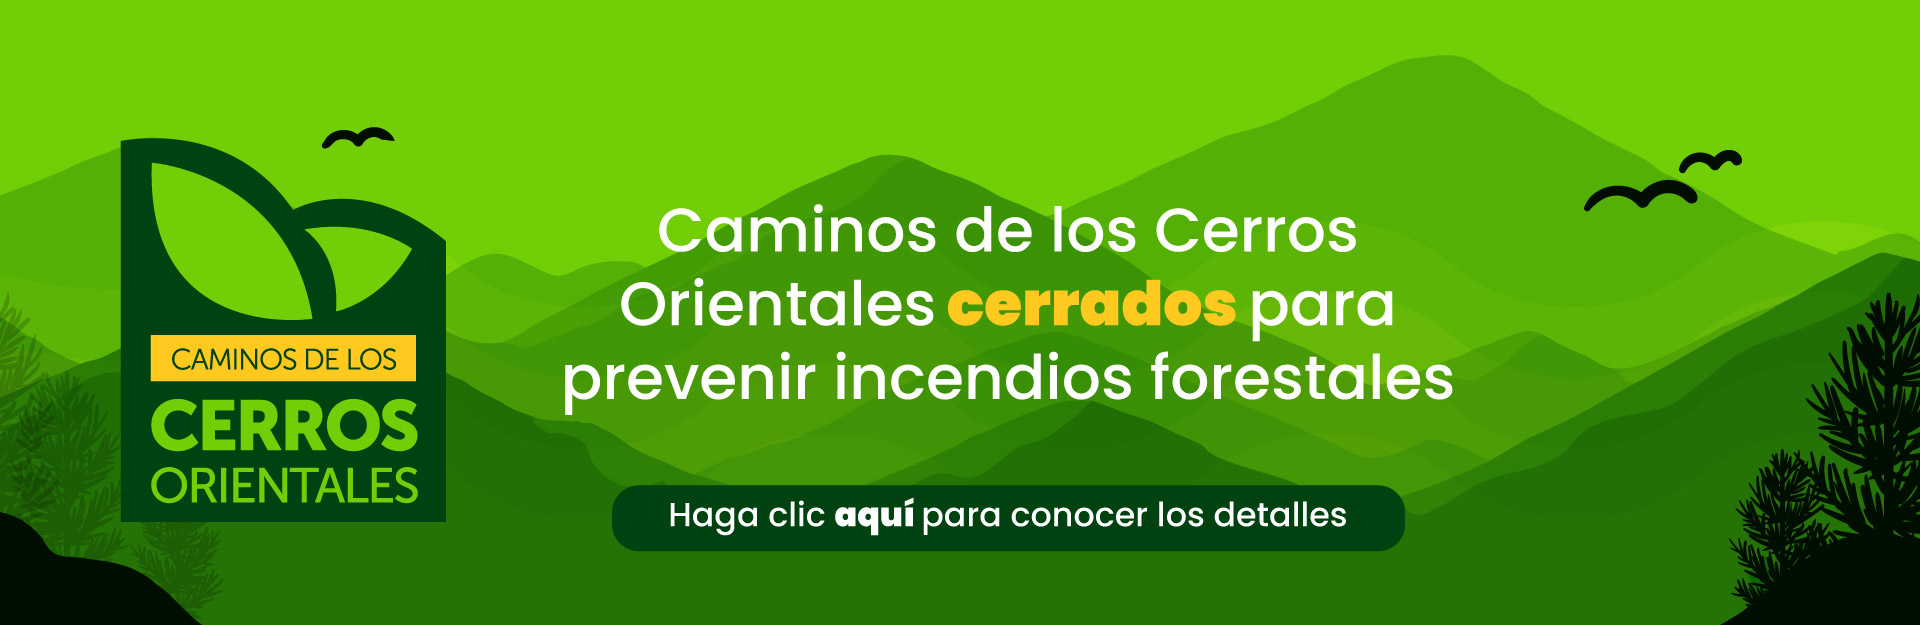 Caminos de los Cerros Orientales cerrados para prevenir incendios forestales